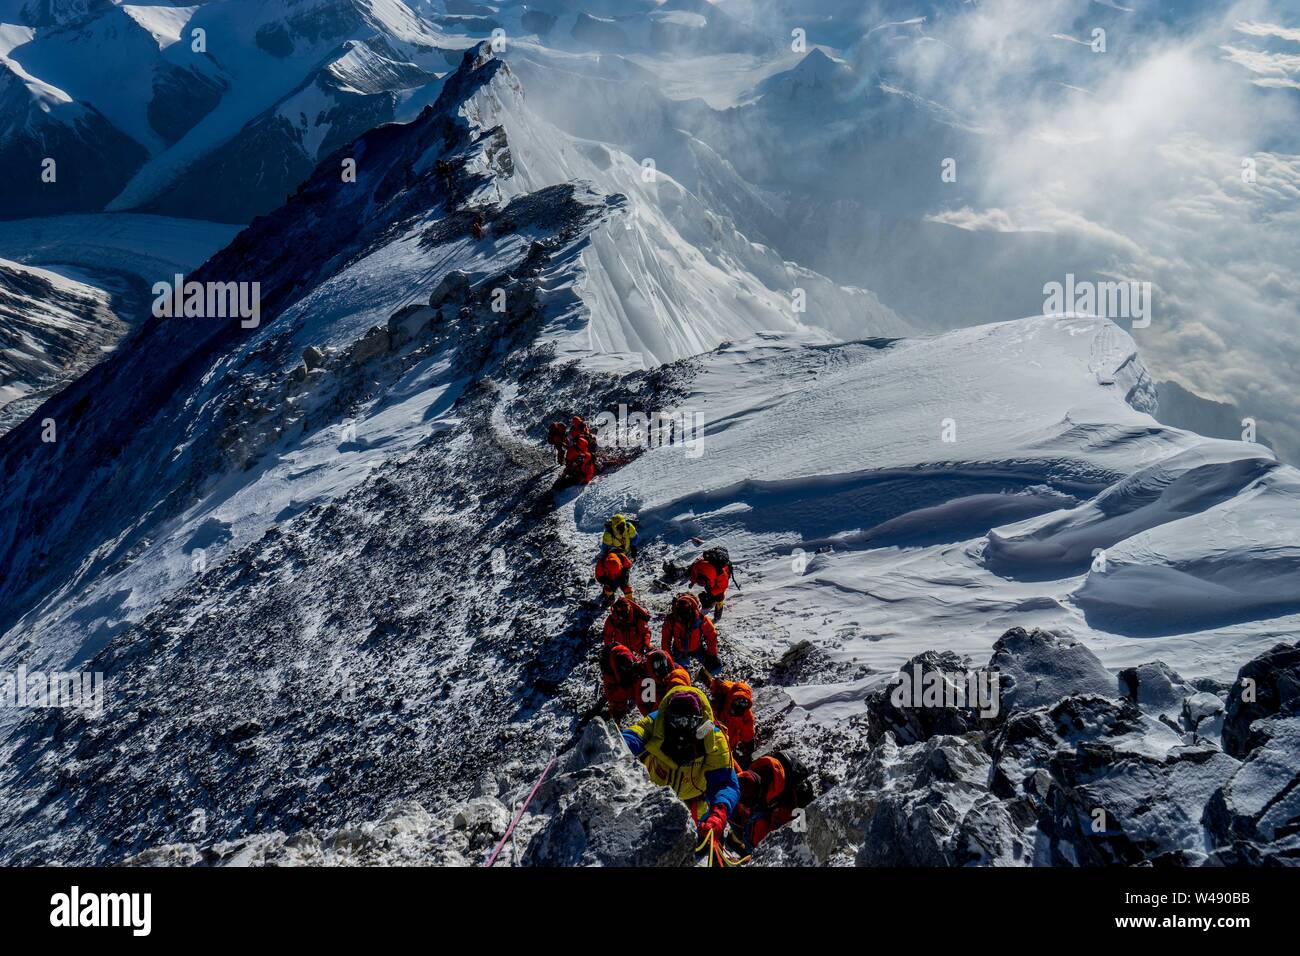 (190721) -- LHASA, luglio 21, 2019 (Xinhua) -- Fotografia scattata da Zhaxi Cering su 24 Maggio 2019 mostra gli alpinisti scaling Mount Qomolangma nel sud-ovest della Cina di regione autonoma del Tibet. Non sarebbe l'orgoglio di dire che Zhaxi Cering della fotografia di carriera iniziata su un alto: la fotografia che sparato a fama a poco più di un decennio fa è stata presa sulla parte superiore delle più alte del mondo montagna. In 2008, Zhaxi era un membro dell'arrampicata cinese team che ha portato la torcia olimpica al vertice di Mt. Qomolangma. Appena 26 anni al momento, Zhaxi era stato introdotto in Cina alpinista professionista guild Foto Stock